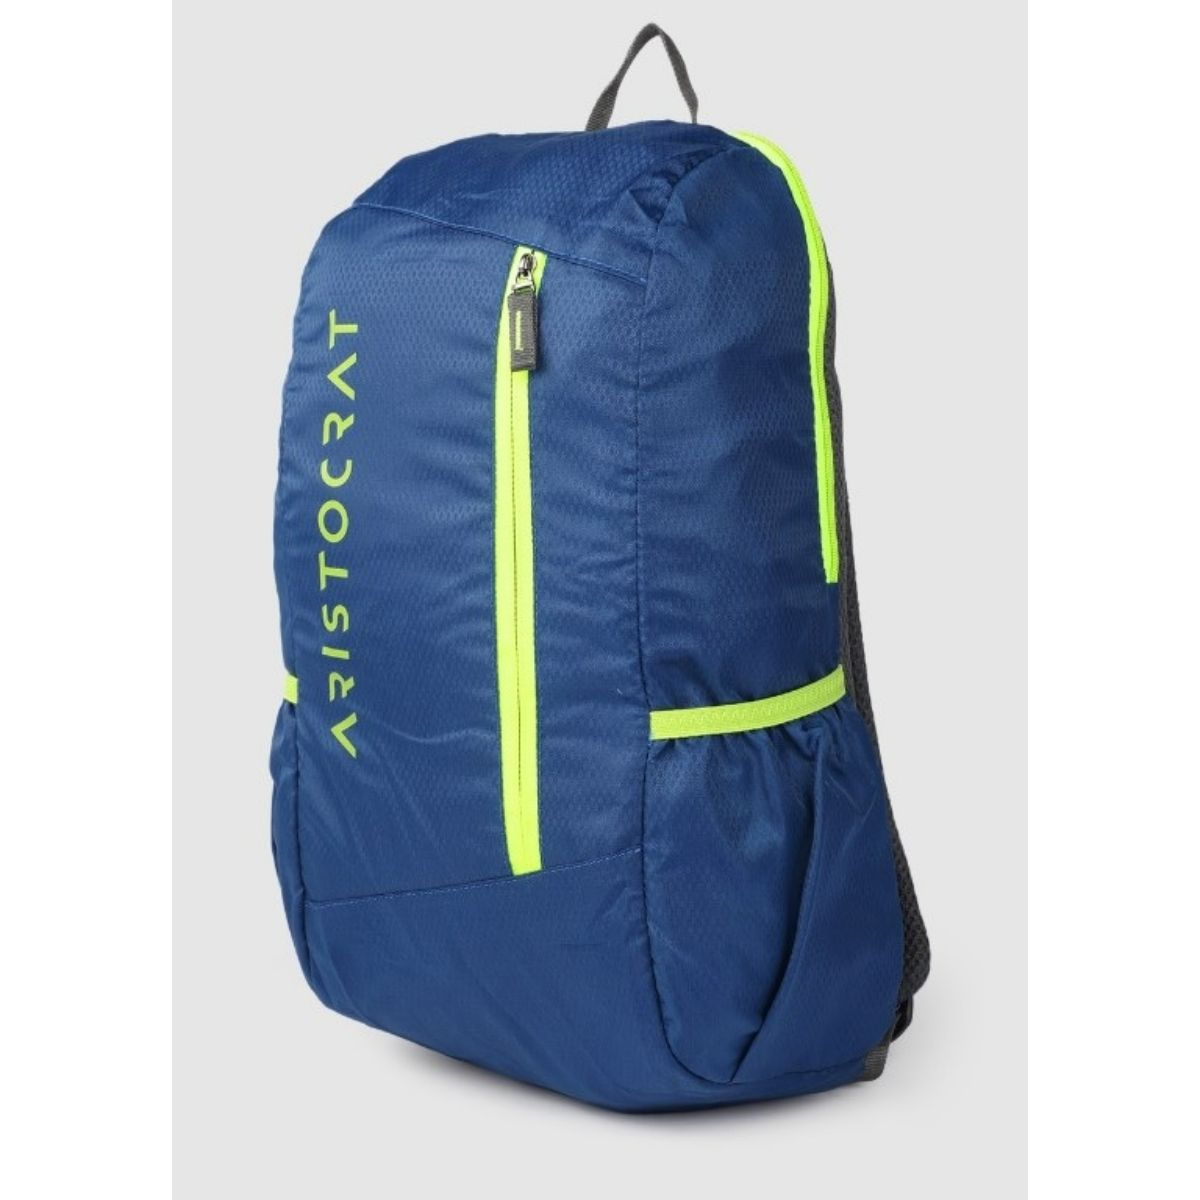 Aristocrat Backpacks - Buy Aristocrat Backpacks Online at Best Prices In  India | Flipkart.com